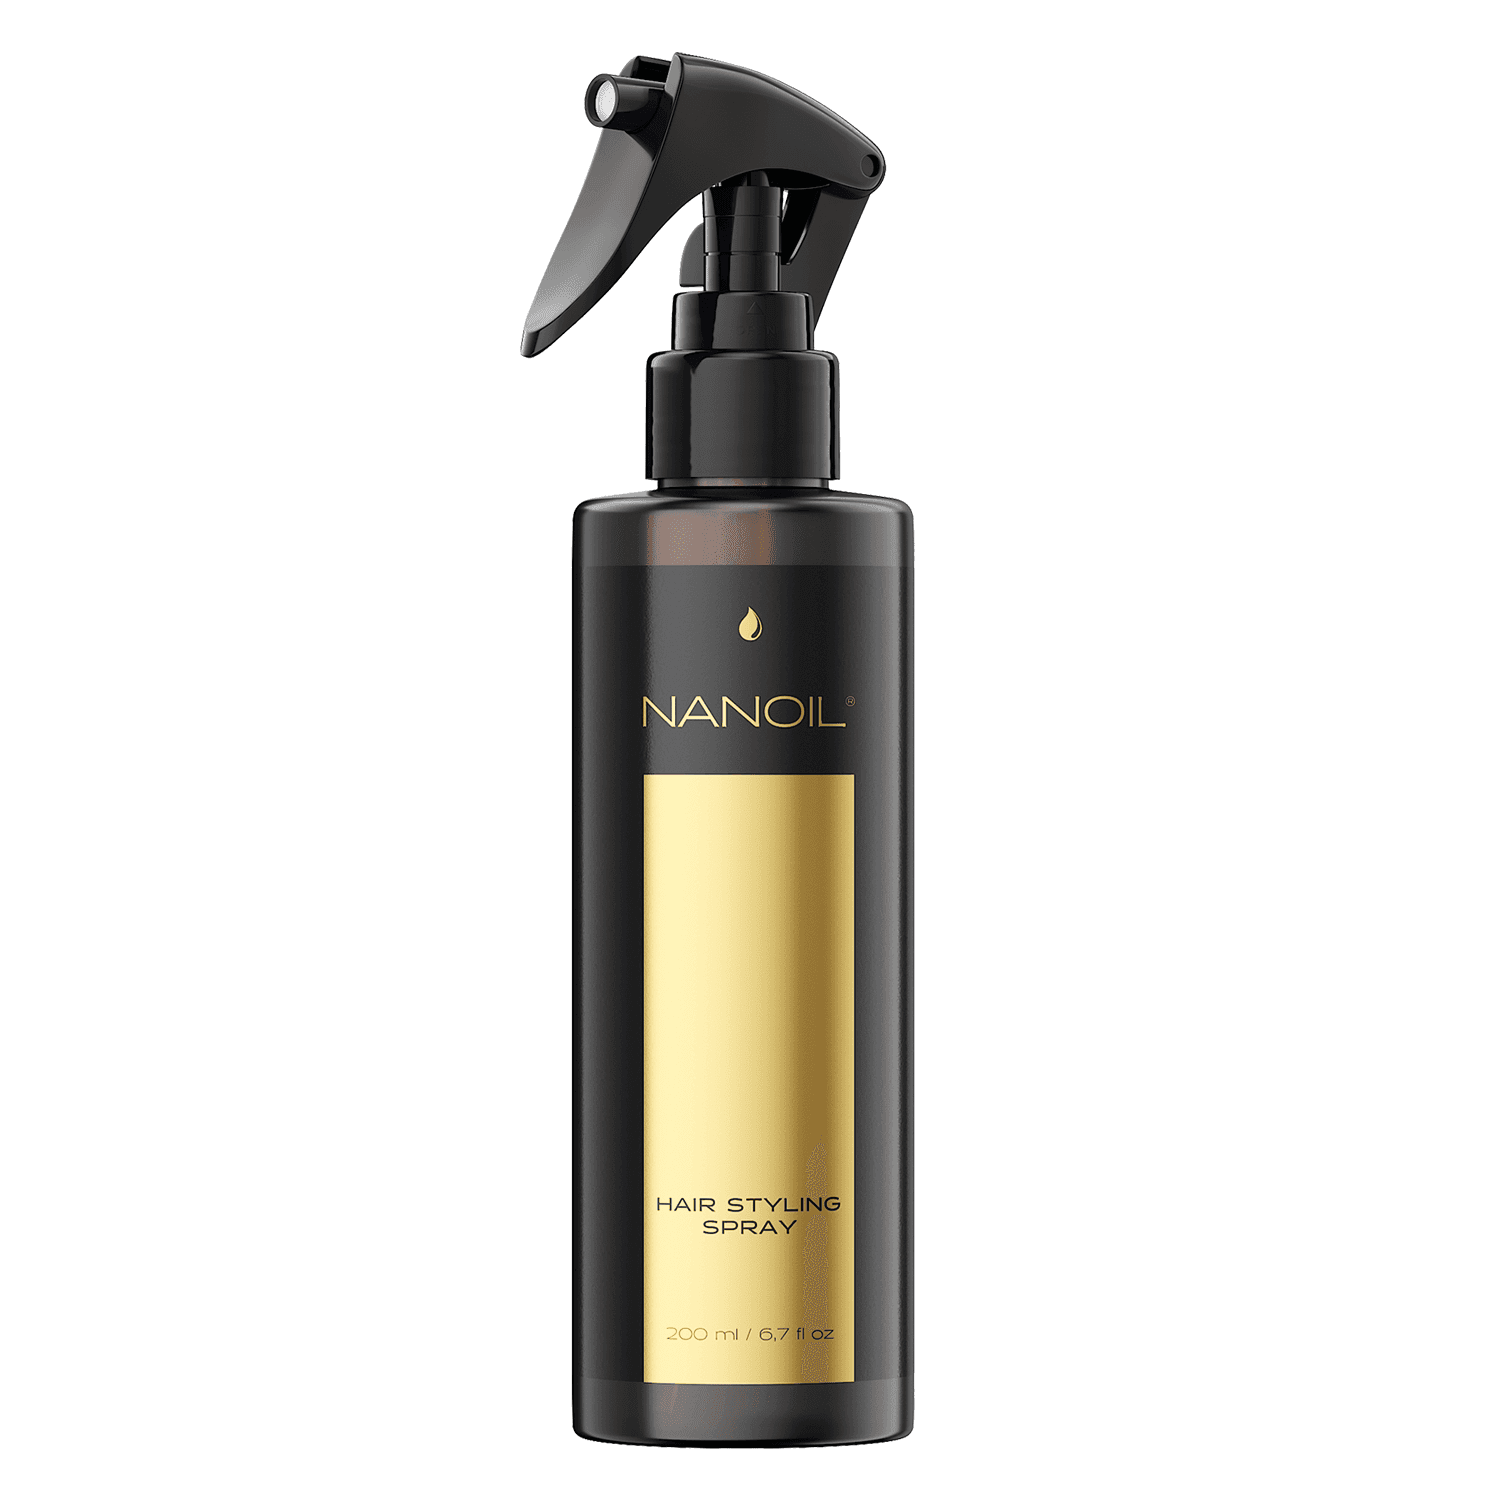 Nanoil - Hair Styling Spray